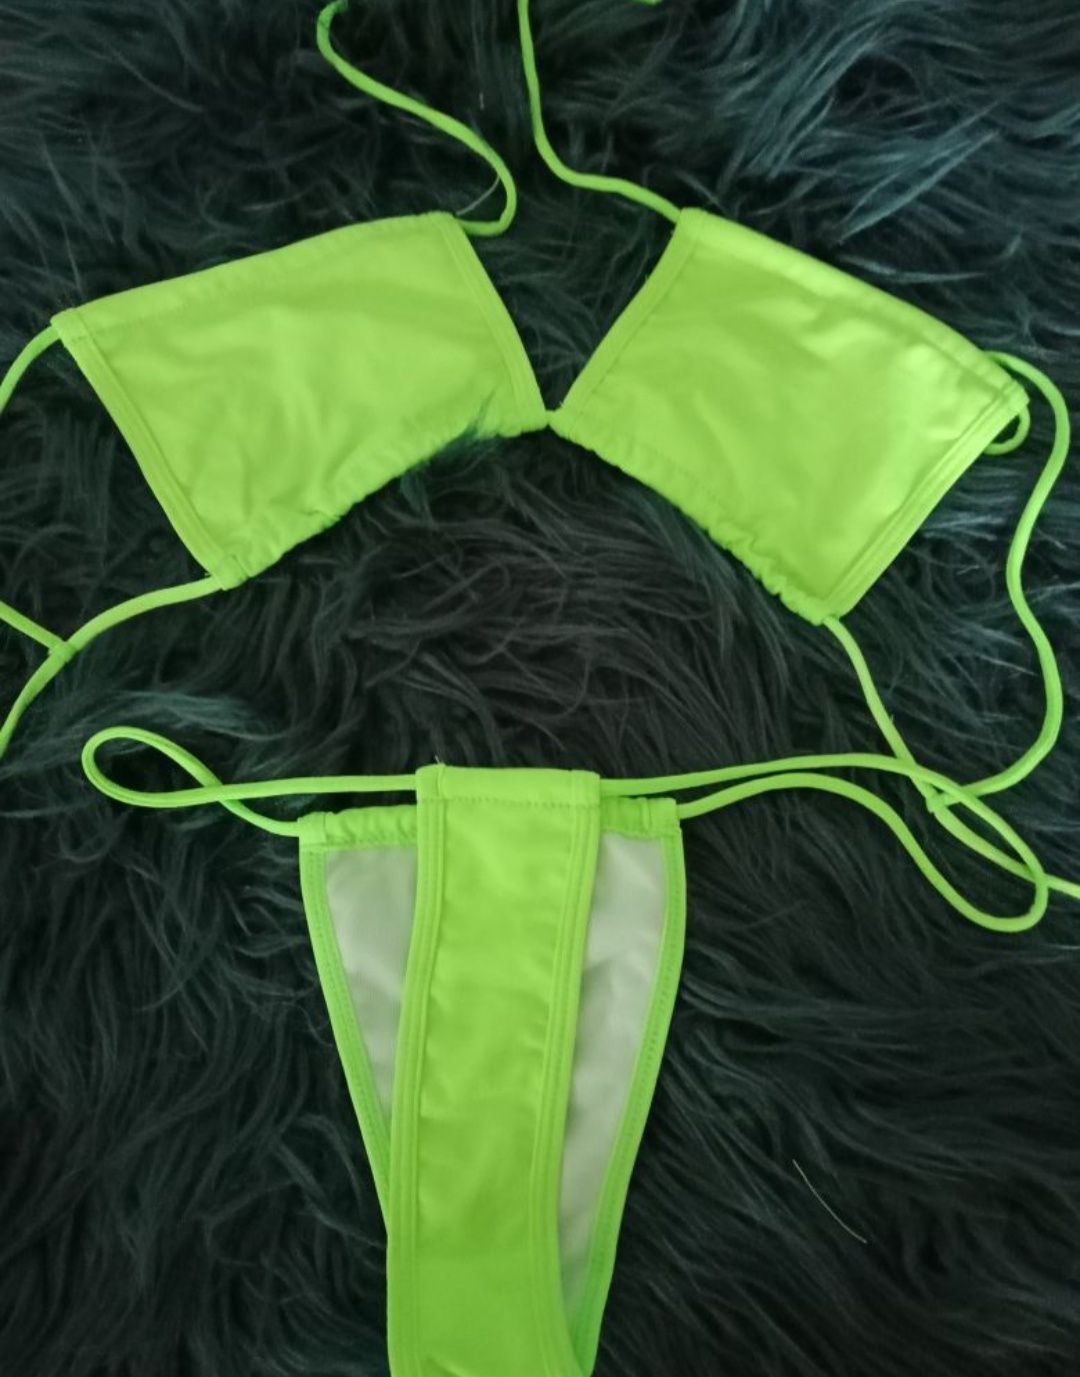 Neonowy kostium kąpielowy bikini stringi